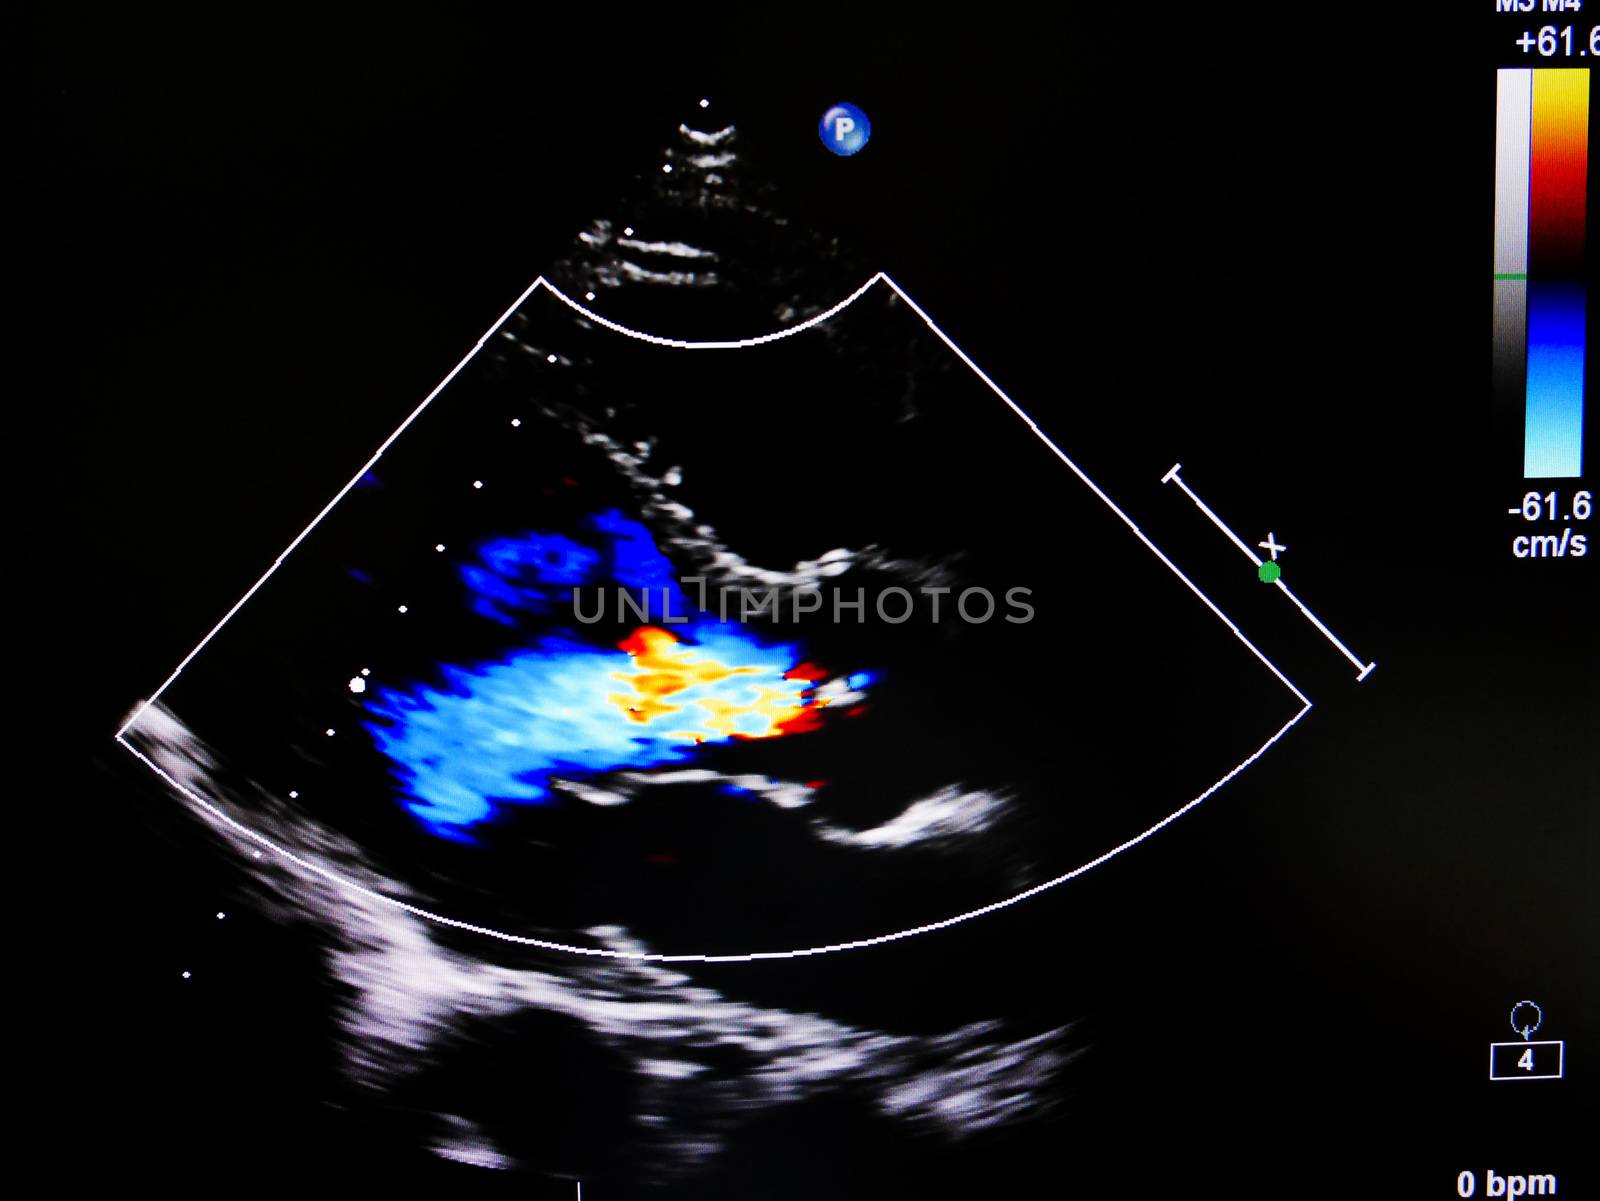 Flow color mode in echocardiogram in mitral valve regurgitation patient